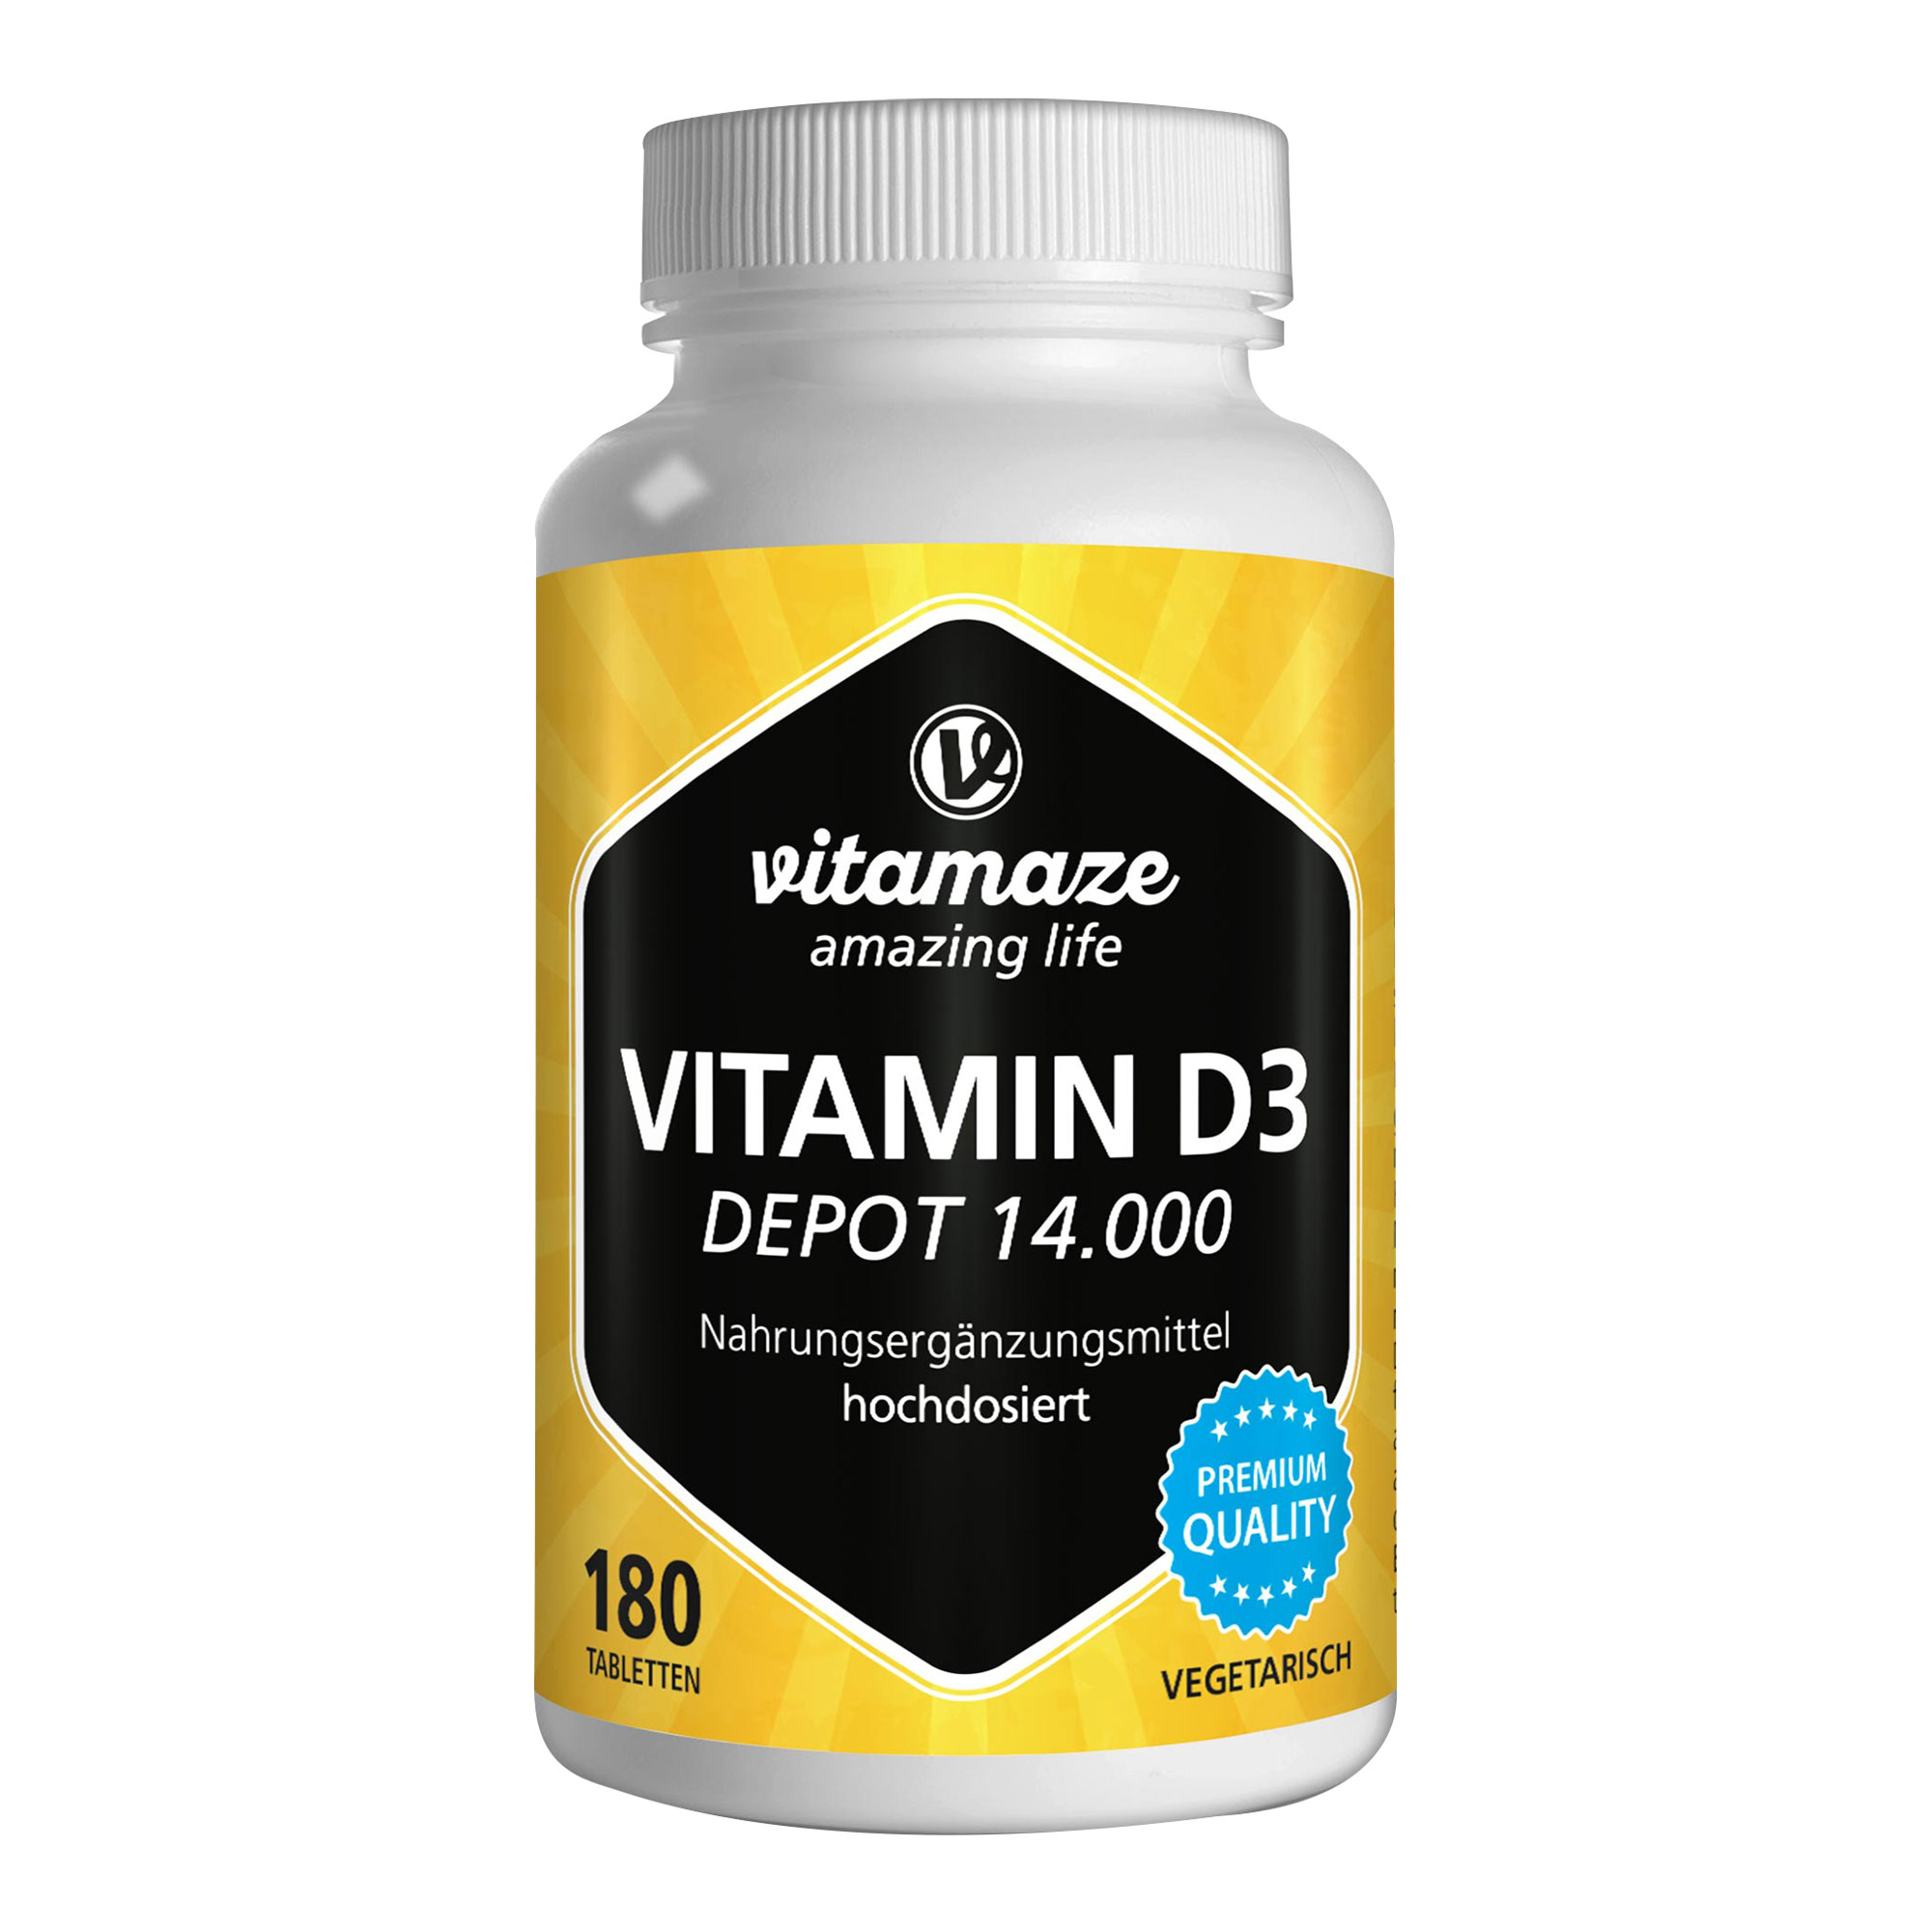 Nahrungsergänzungsmittel mit Vitamin D3. Für Knochen, Zähne, Muskel- und Immunfunktion.